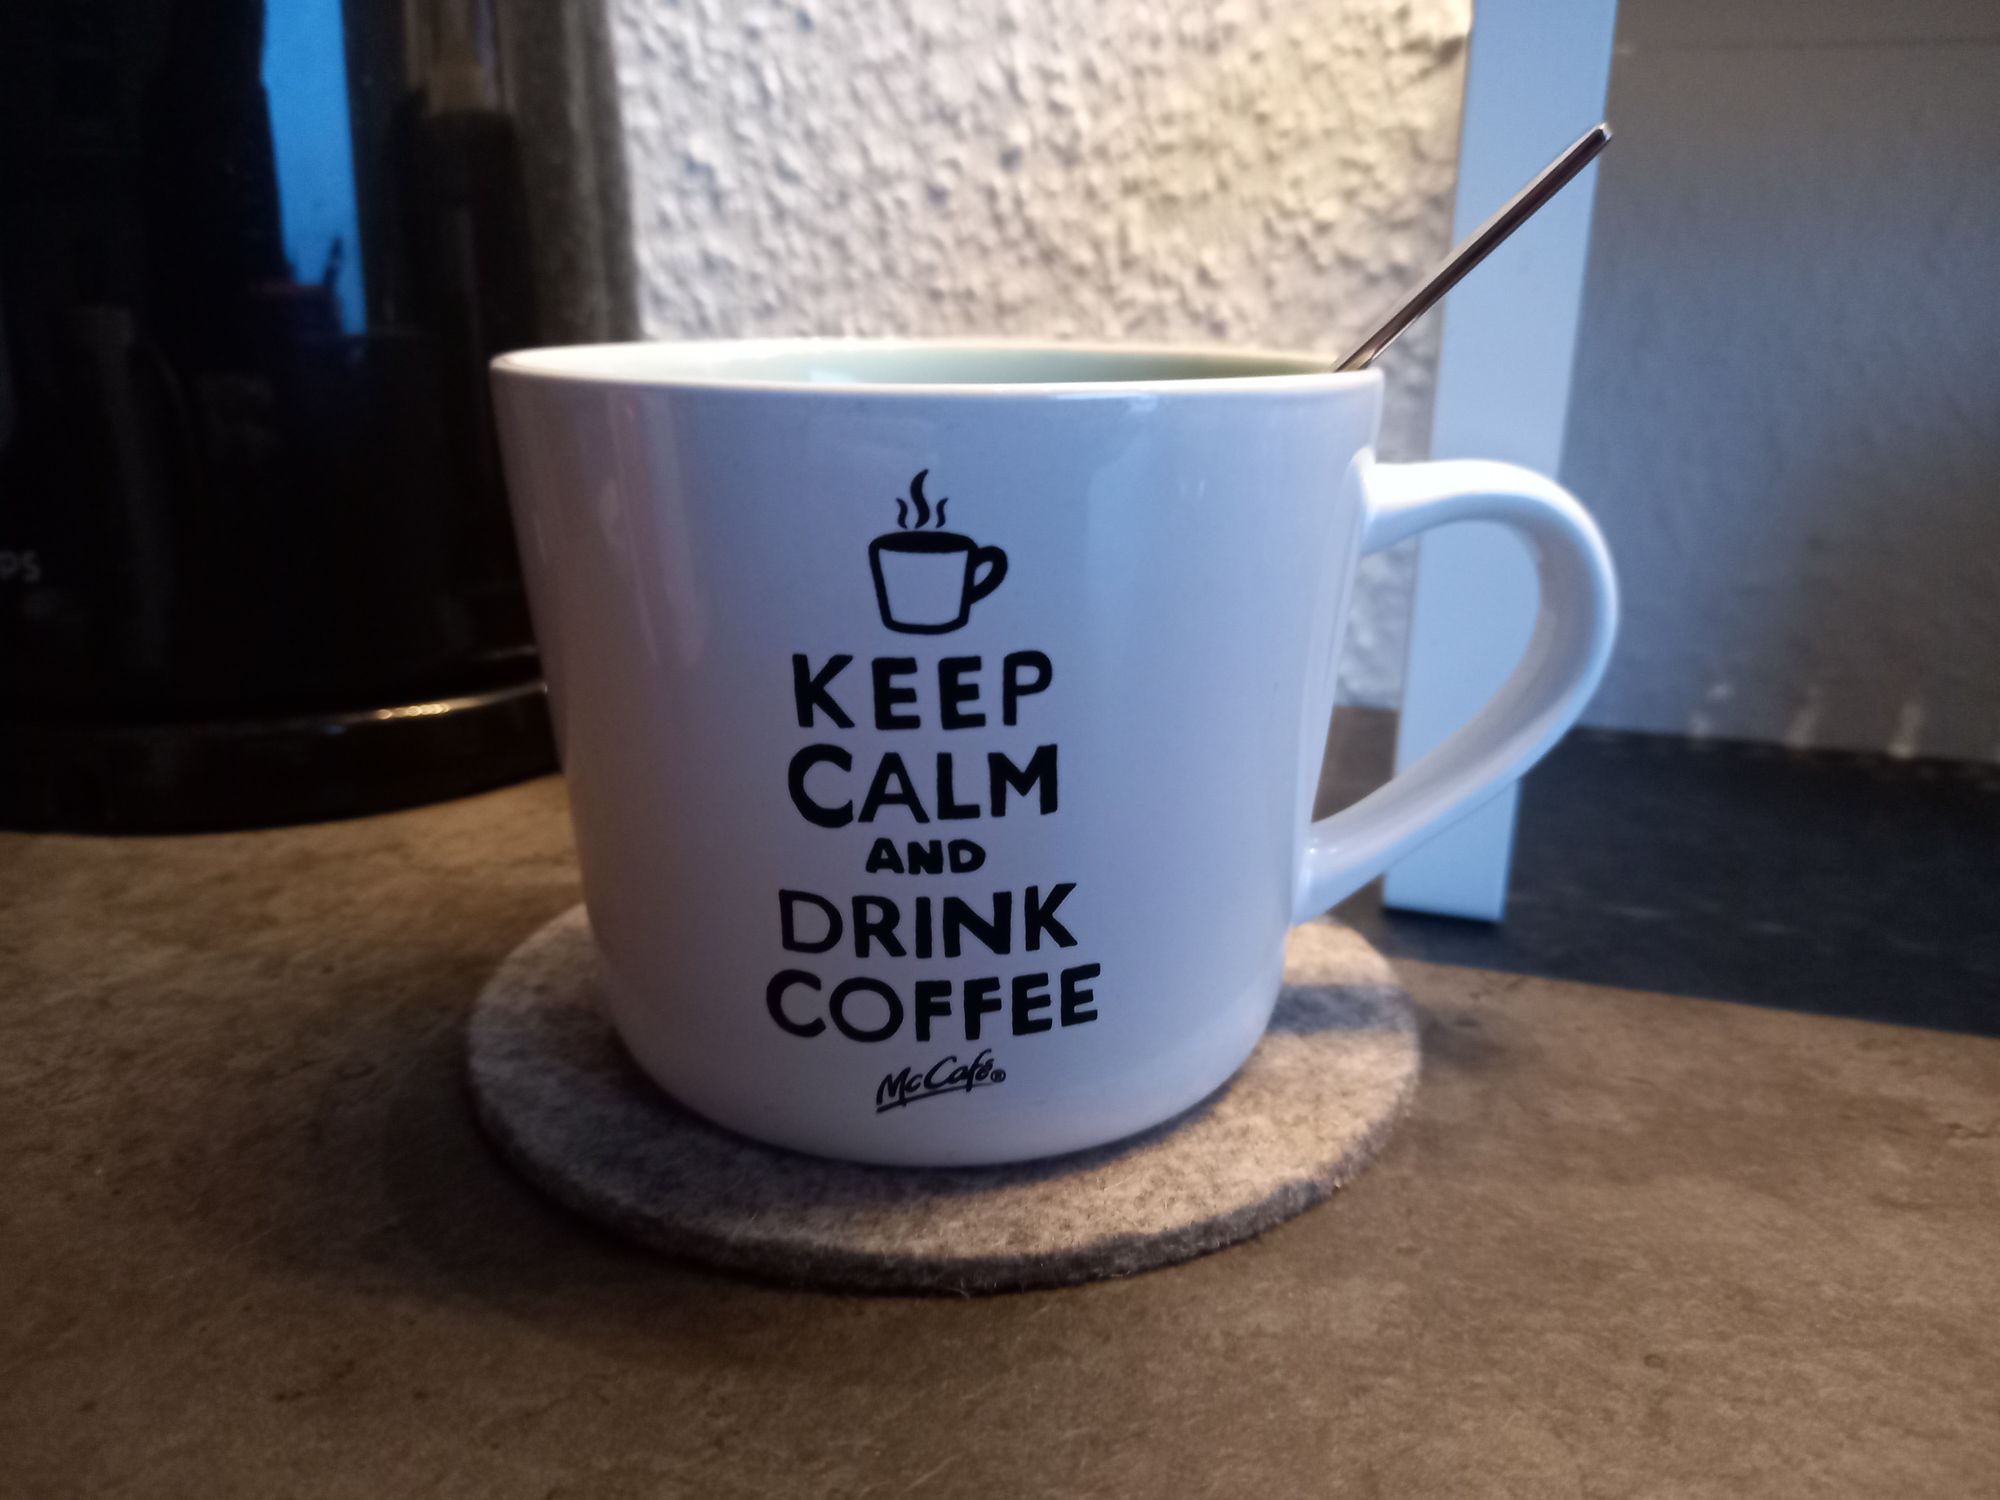 Keep Calm And Drink Coffee